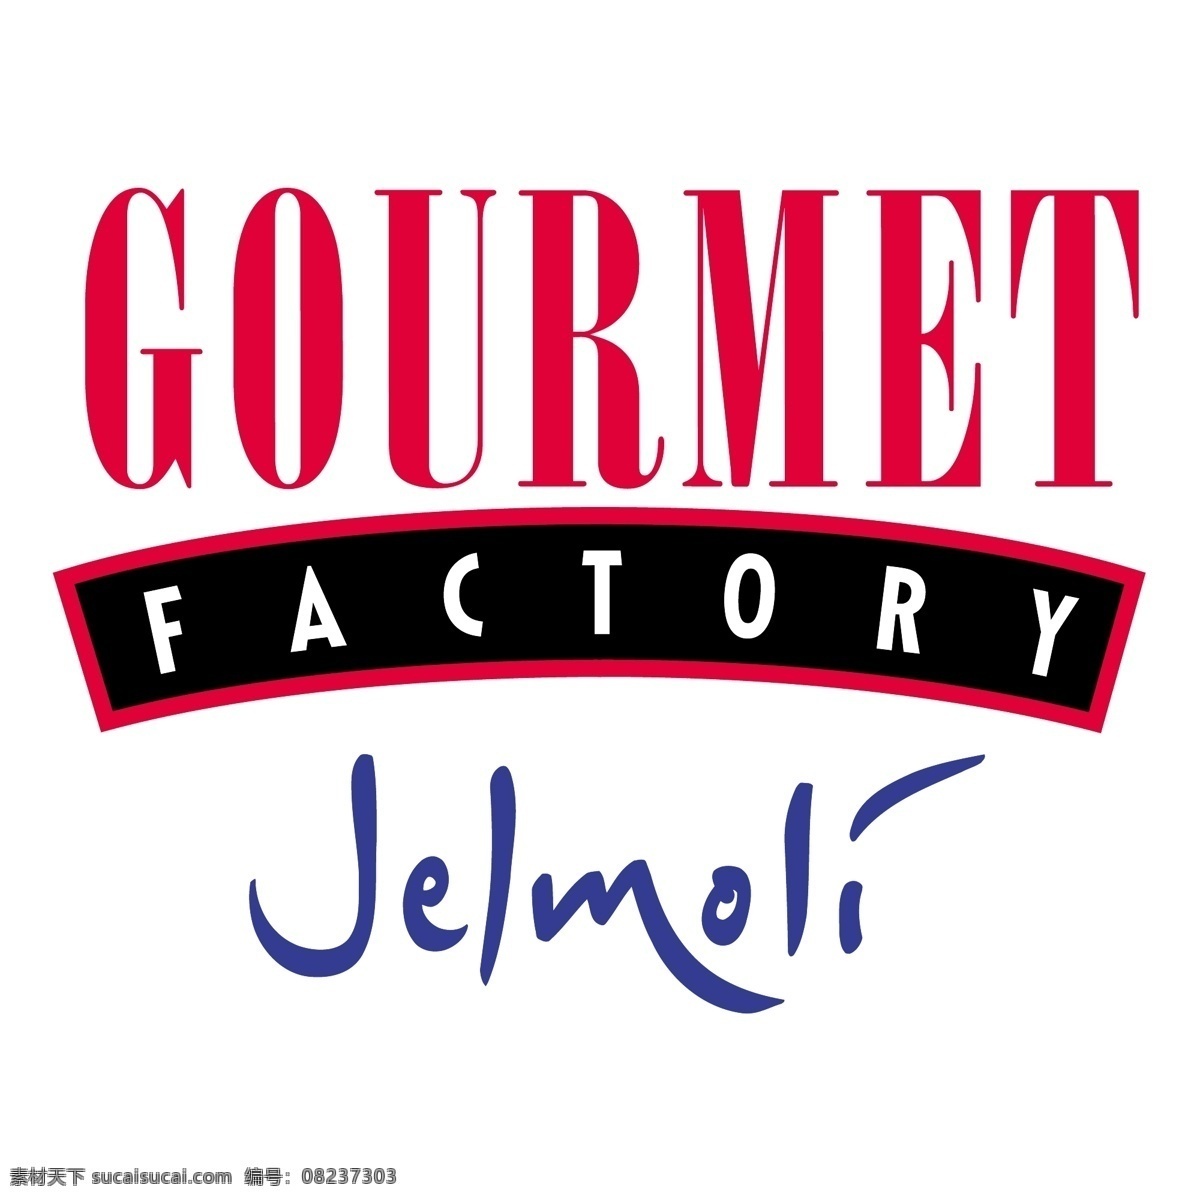 jelmoli 味精厂 工厂 美食 美食的工厂 矢量 艺术 自由 工厂自由向量 向量 图像 设计制造厂 本厂免费 免费 图形